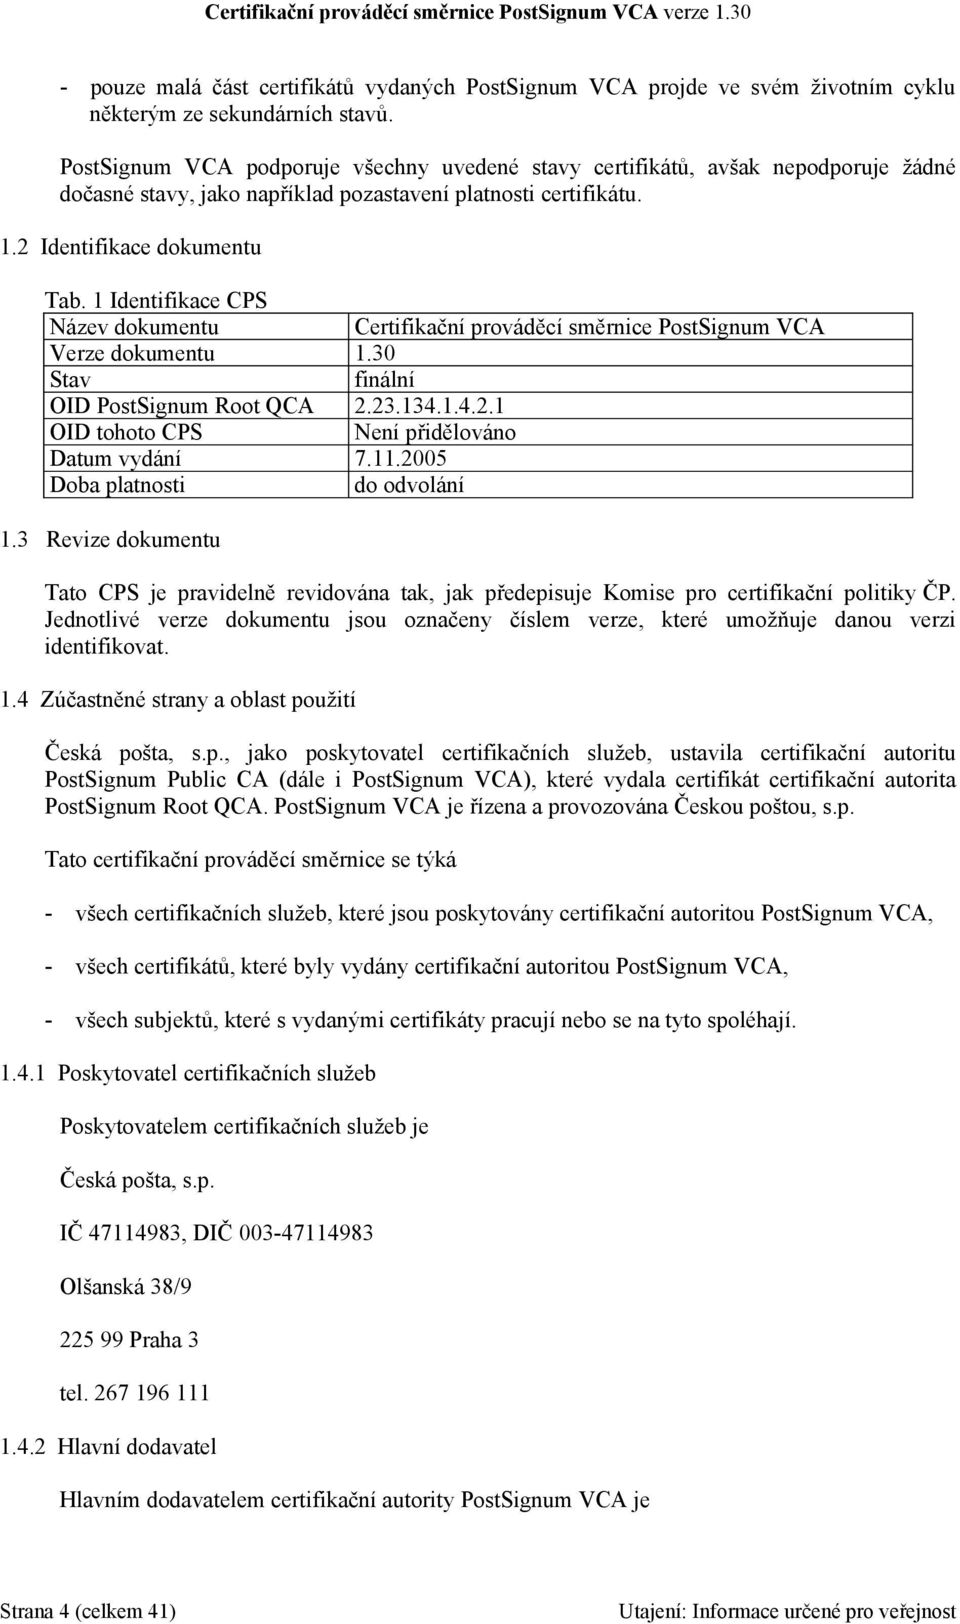 1 Identifikace CPS Název dokumentu Certifikační prováděcí směrnice PostSignum VCA Verze dokumentu 1.30 Stav finální OID PostSignum Root QCA 2.23.134.1.4.2.1 OID tohoto CPS Není přidělováno Datum vydání 7.